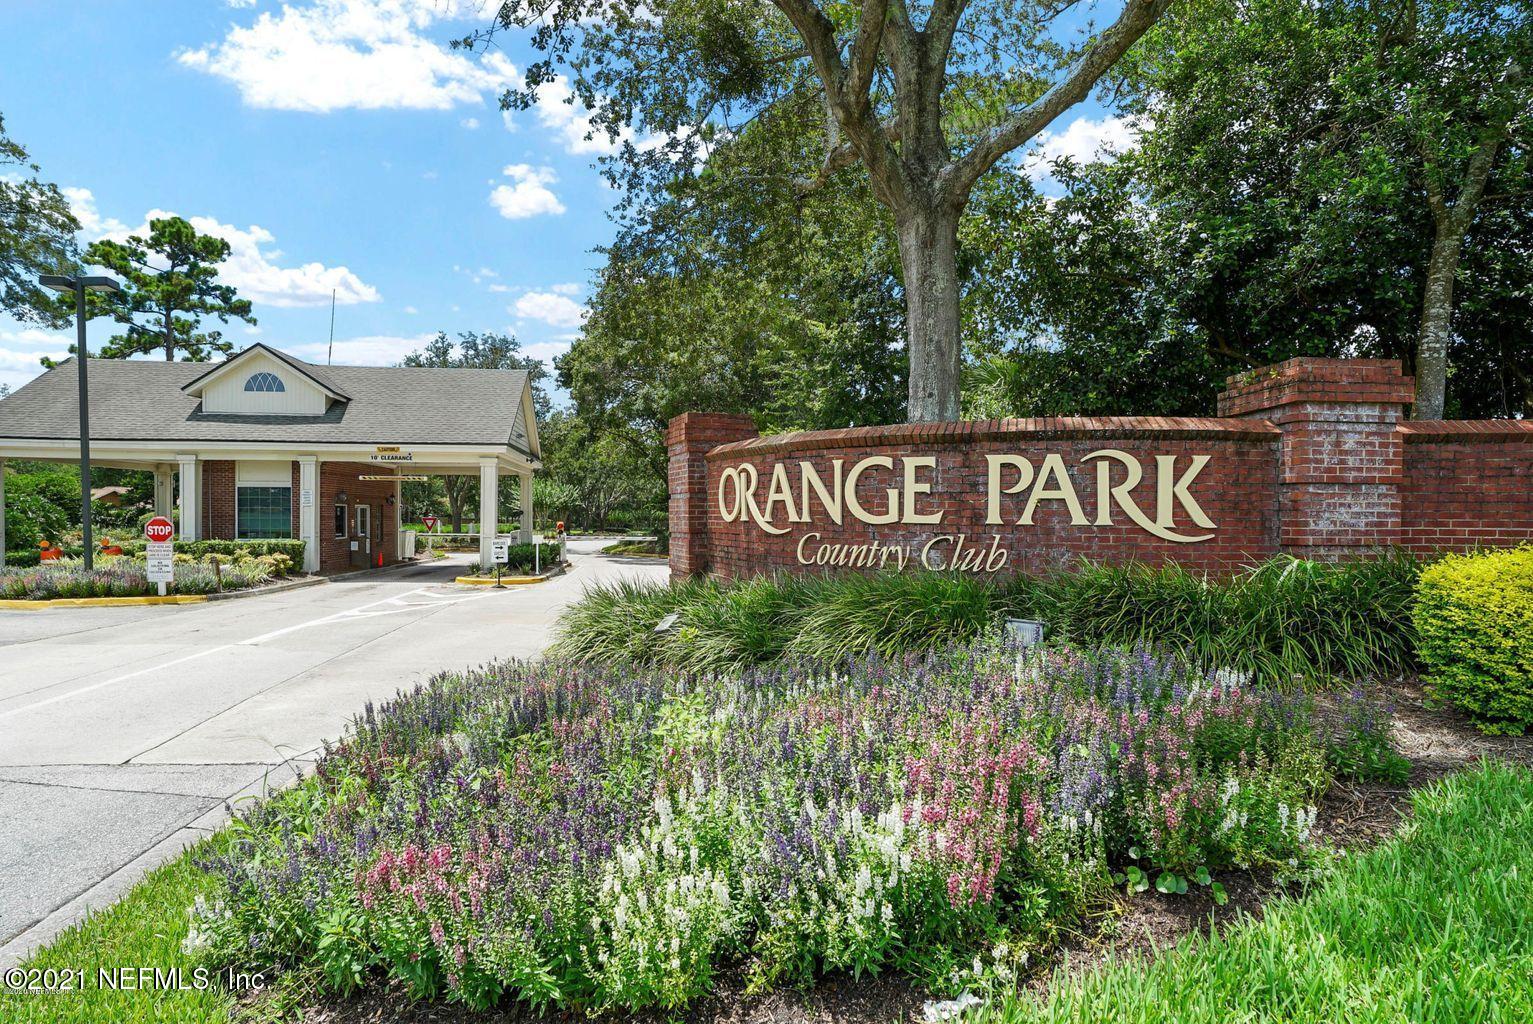 Orange Park CC_gate entrance